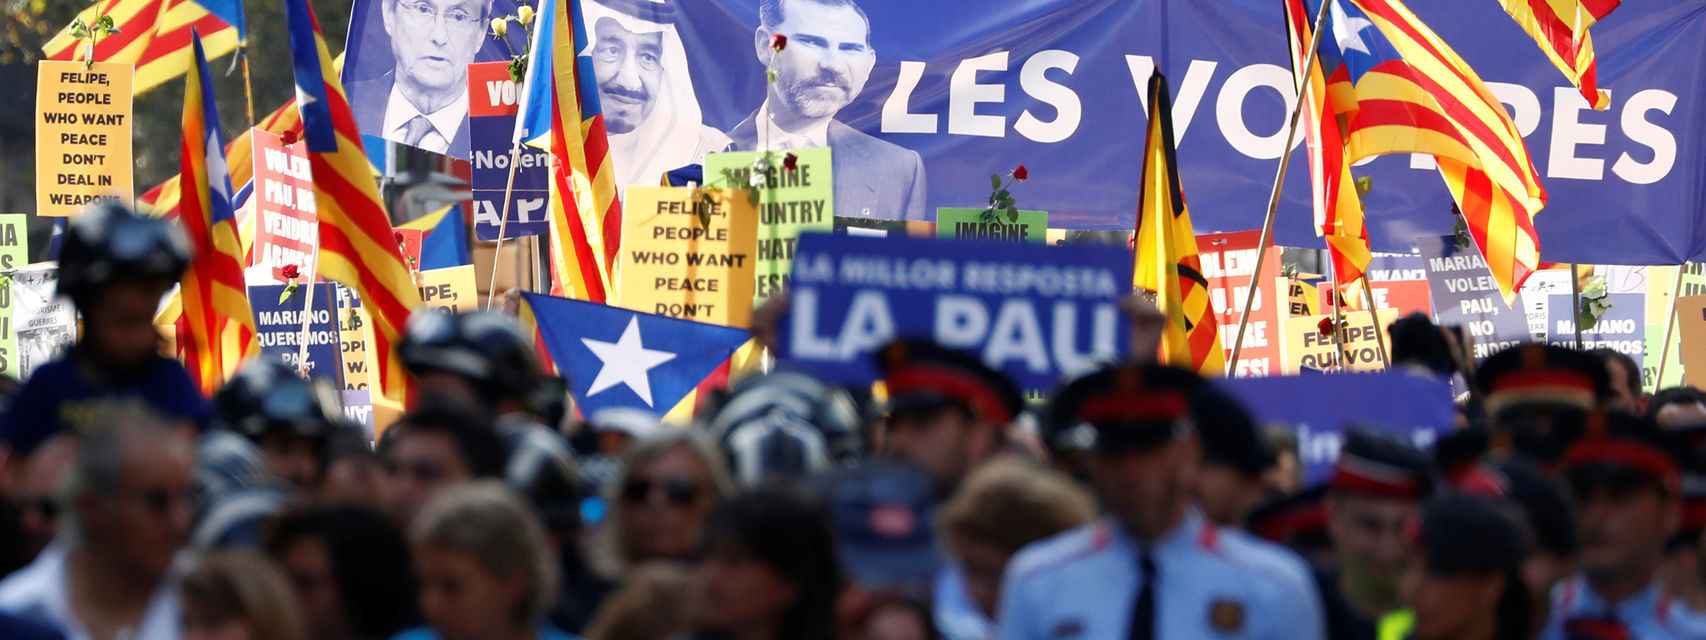 Una gran pancarta, junto a numerosas esteladas, mostraba a Morenés, al rey de Arabia Saudí y al rey con el lema "Les vostres polítiques, els nostres morts" (Vuestras políticas, nuestros muertos).